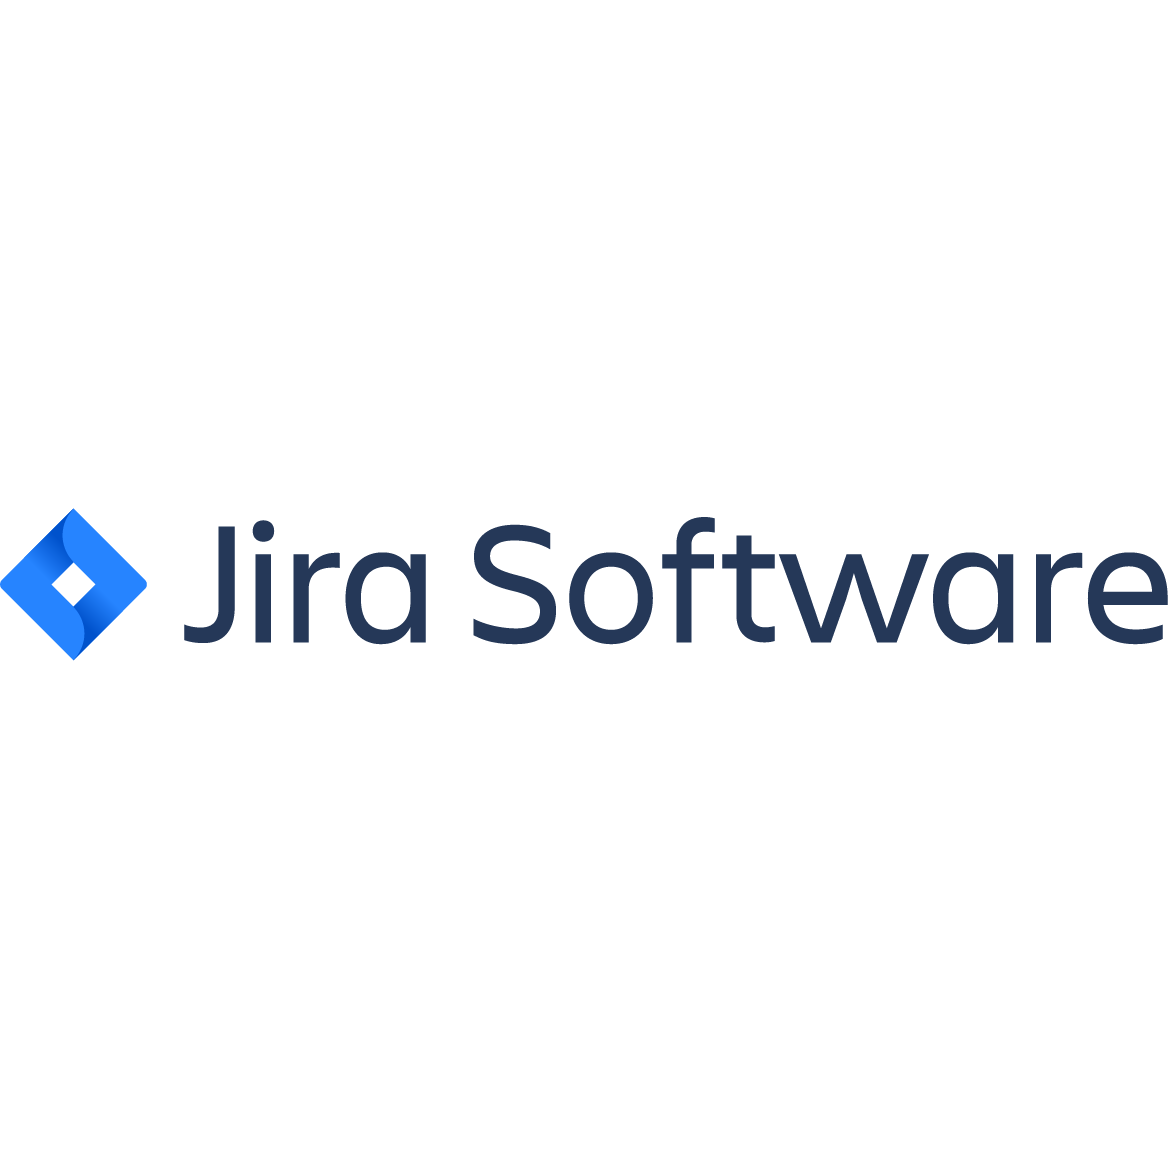 JIRA Logo - Jira Software Review